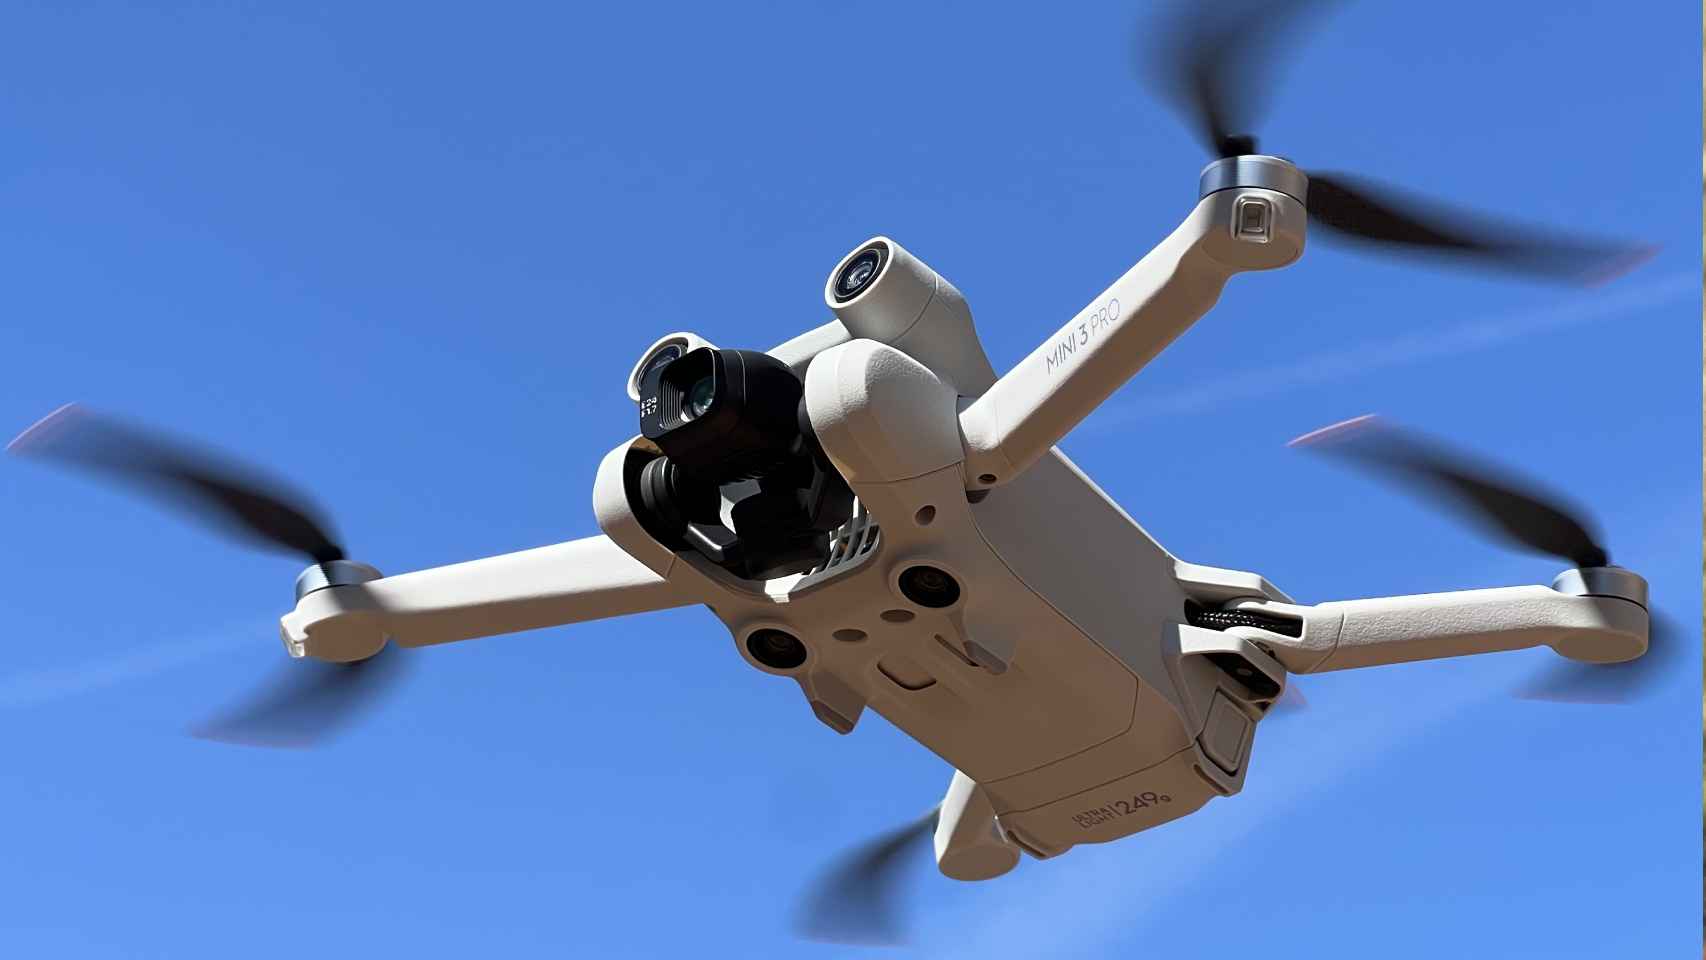 DJI lanza un dron profesional muy potente que cabe en una mochila, Pymes